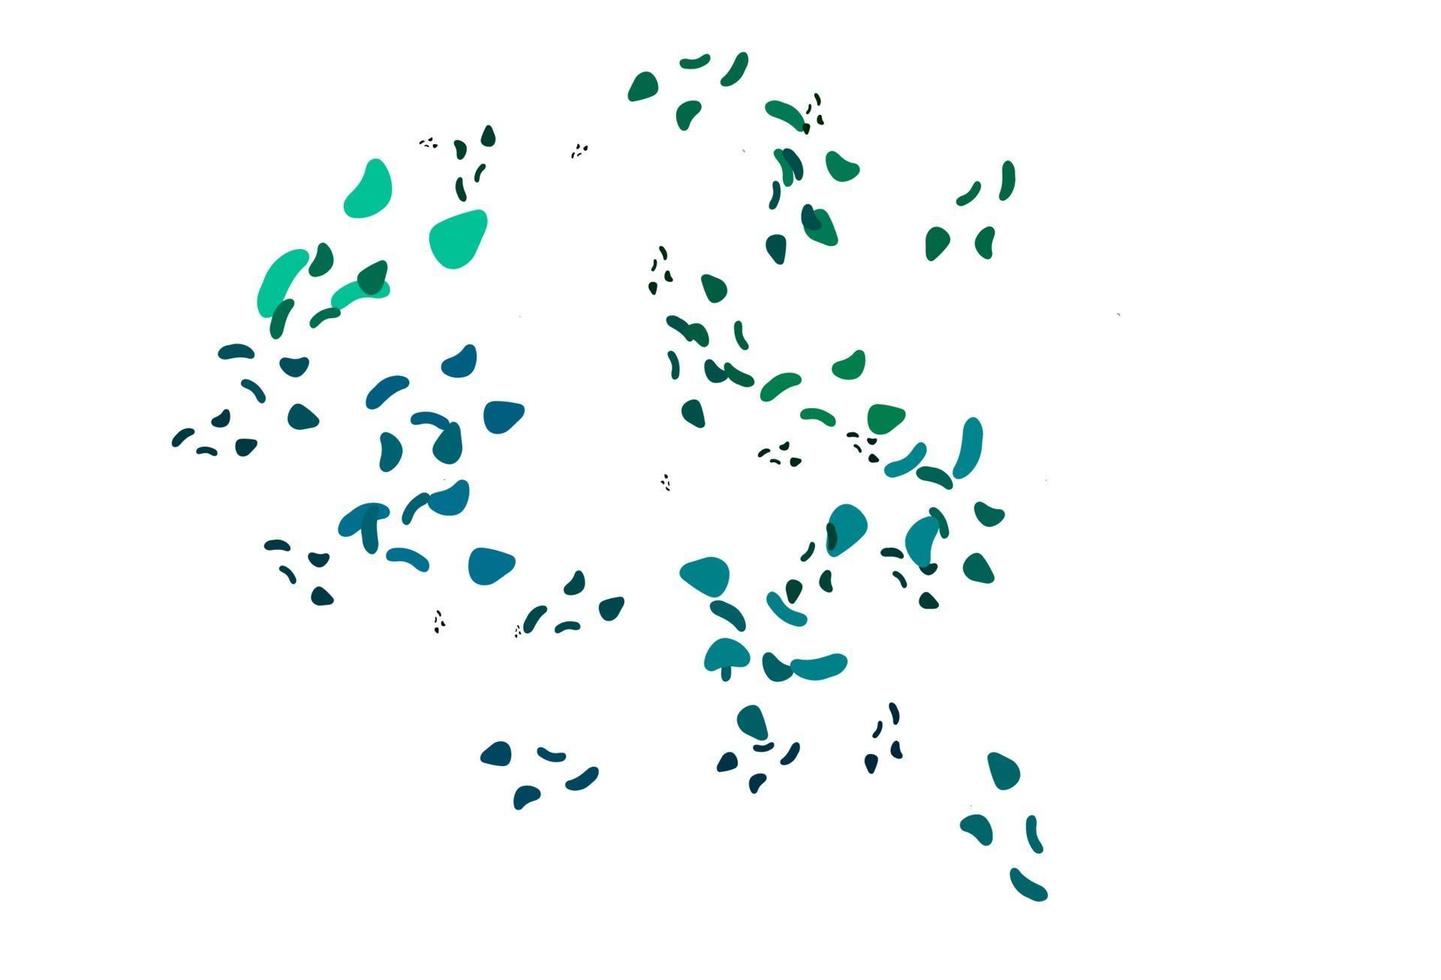 modelo de vetor azul claro e verde com formas de memphis.